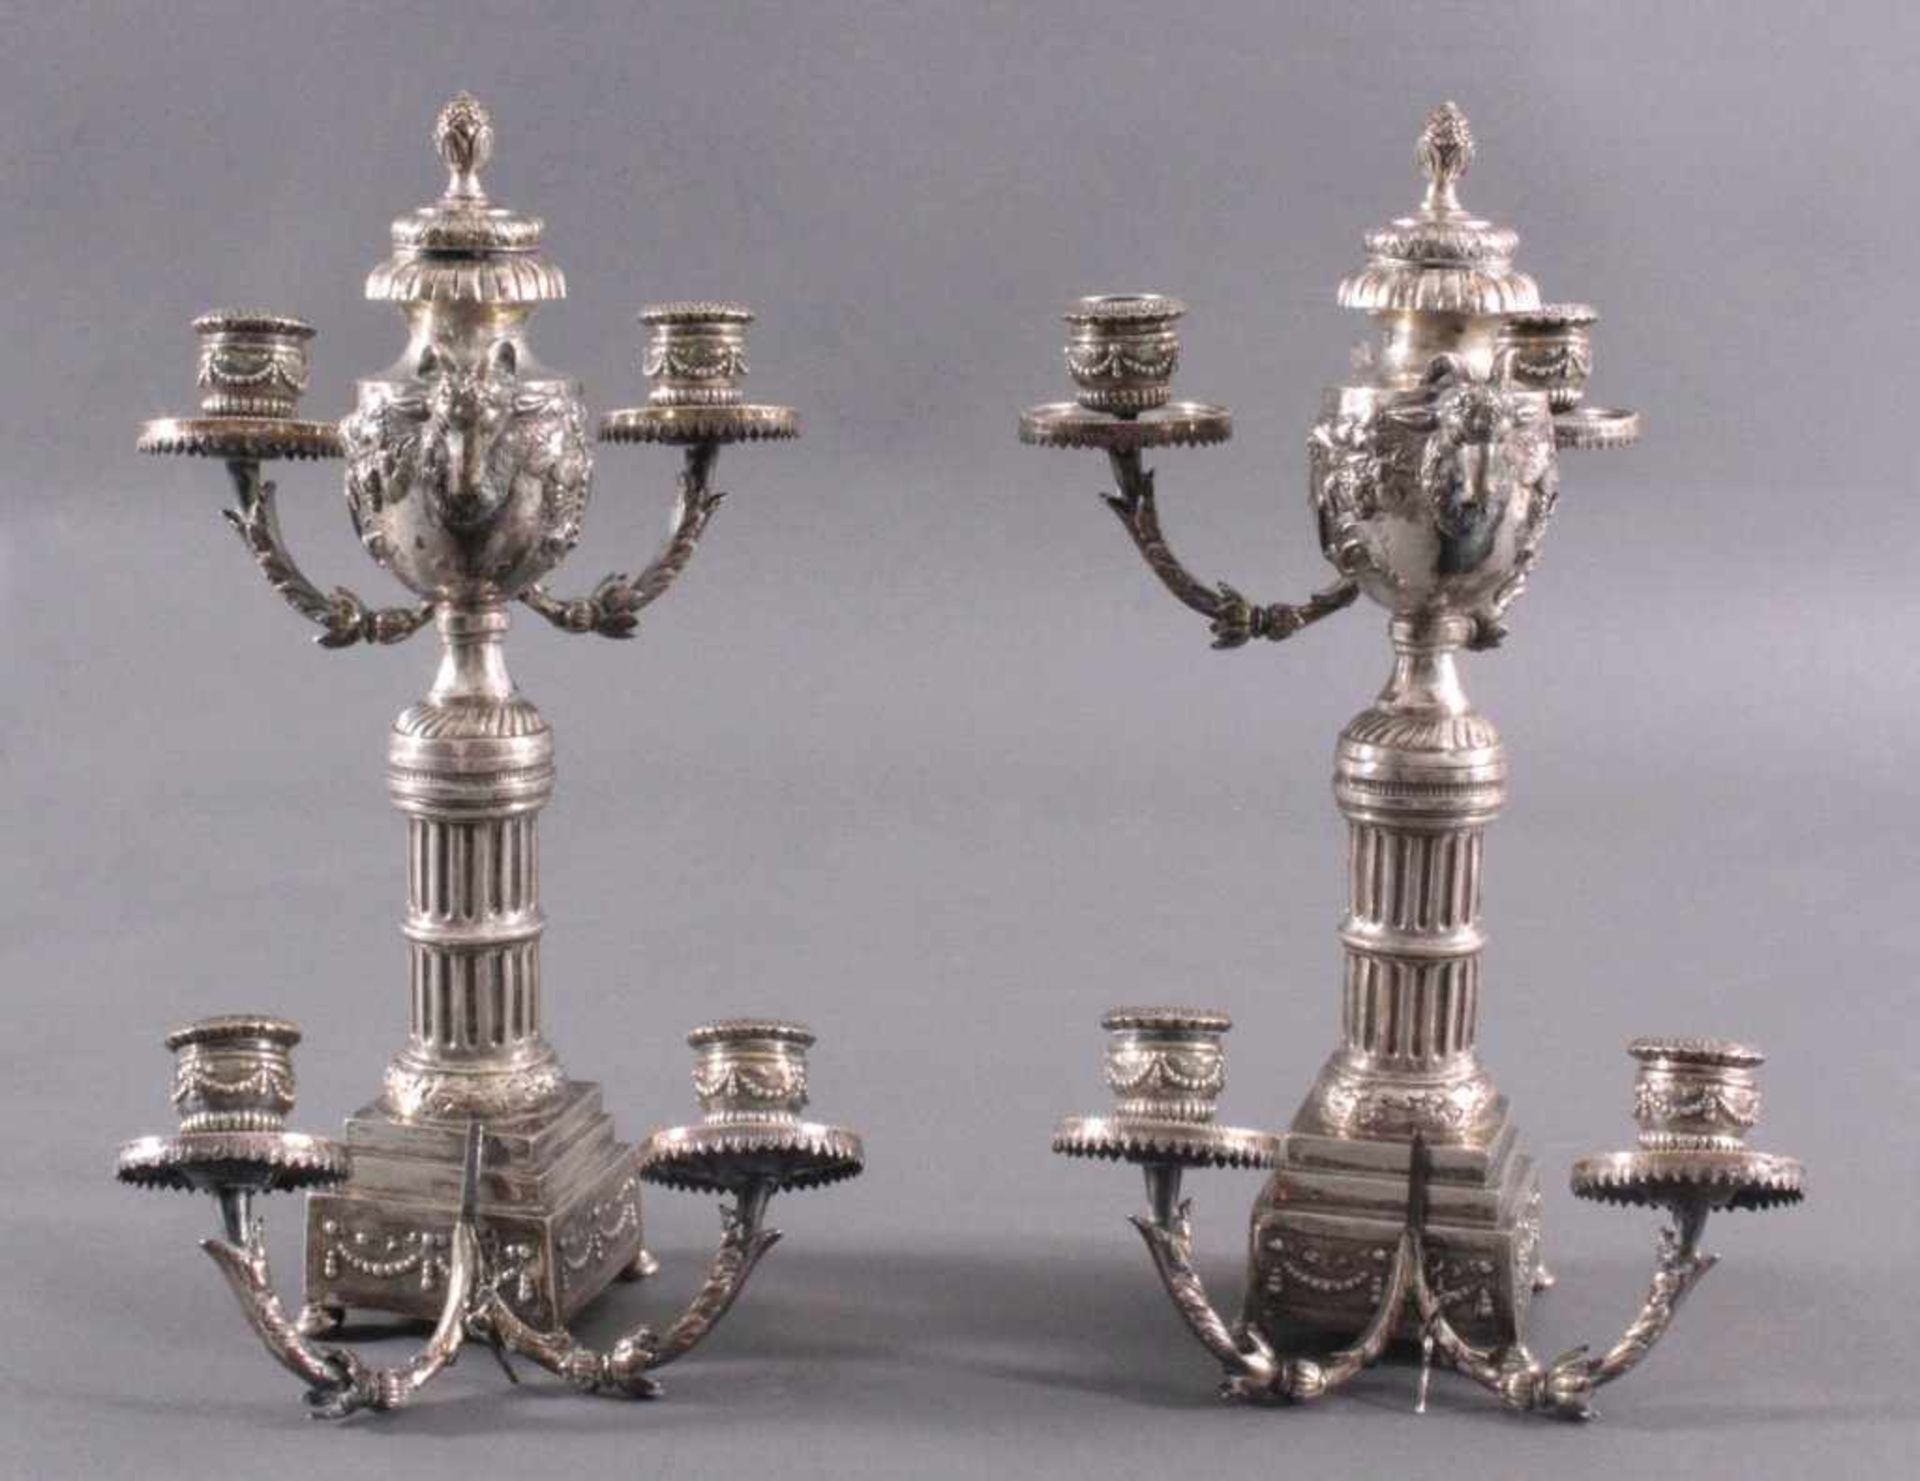 Paar silberne Empire KerzenleuchterUm 1800, auf viereckigen Sockel, getragen von vier rundenFüßen. - Image 3 of 8